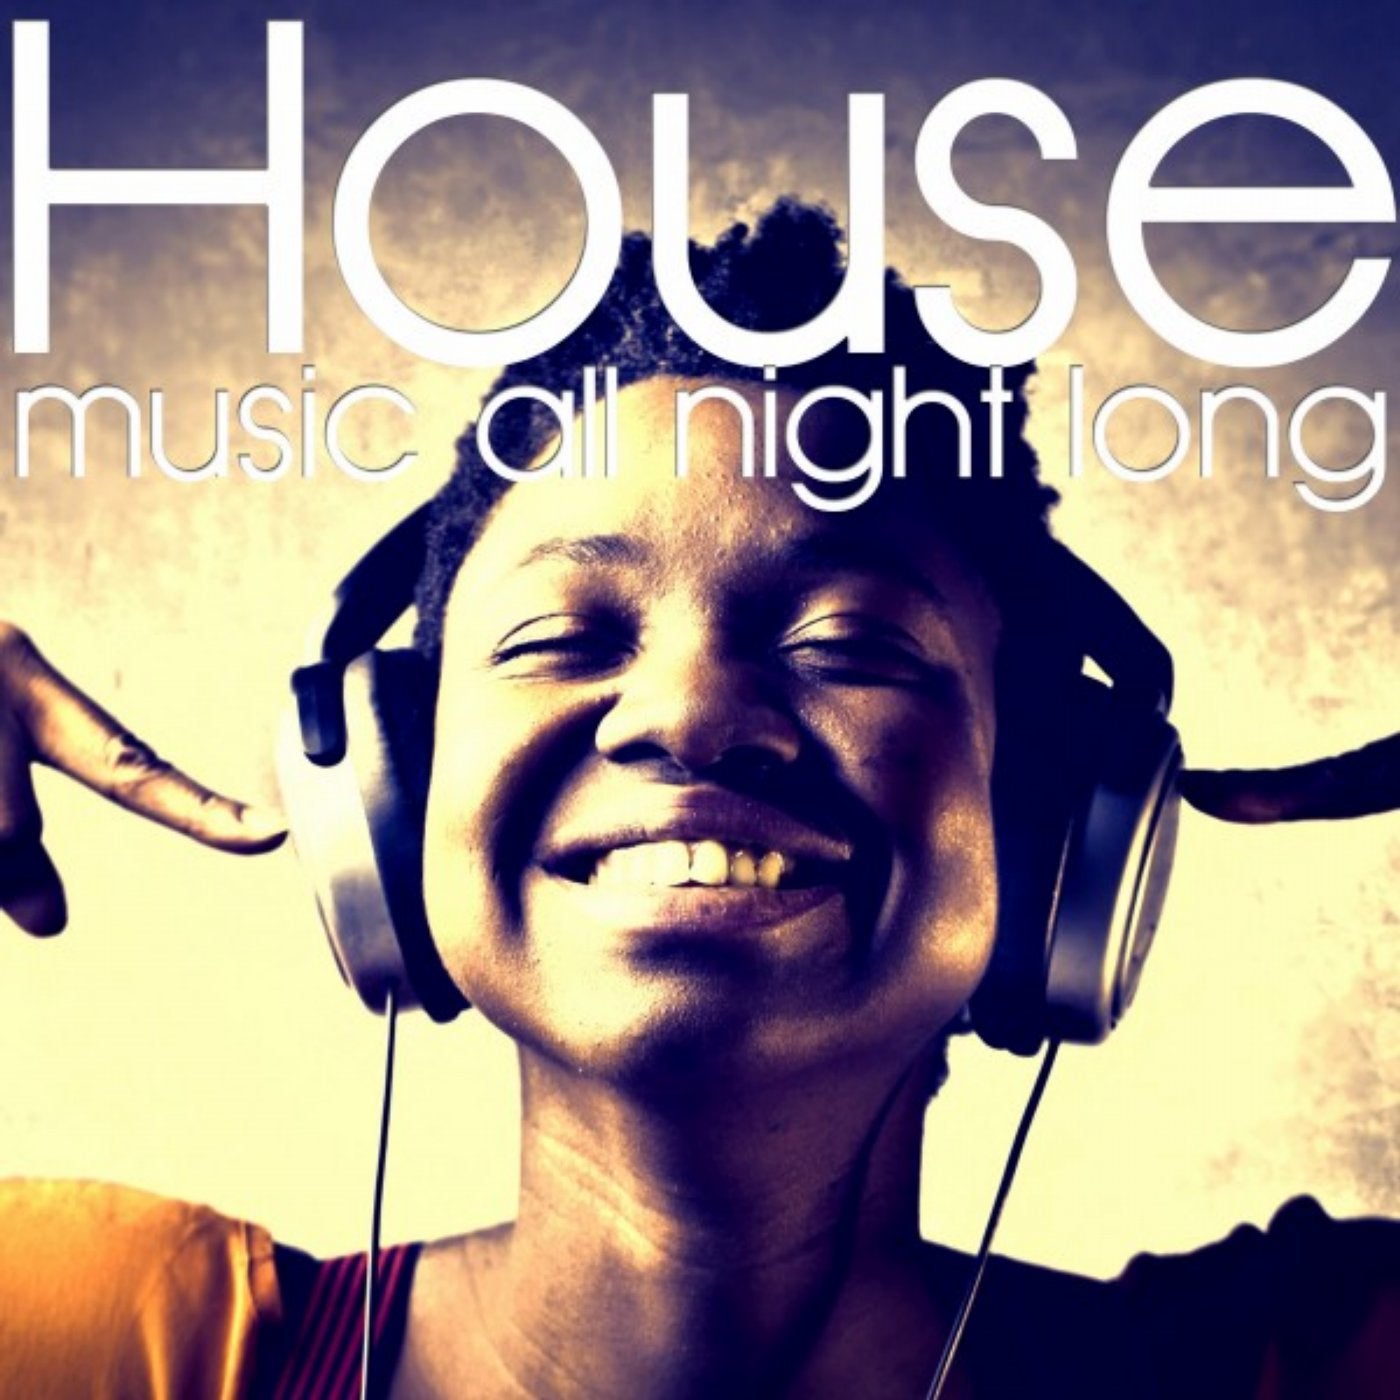 House music mp3. House Music картинки. Хаус музыка картинки. 100 House Music. Песня House.